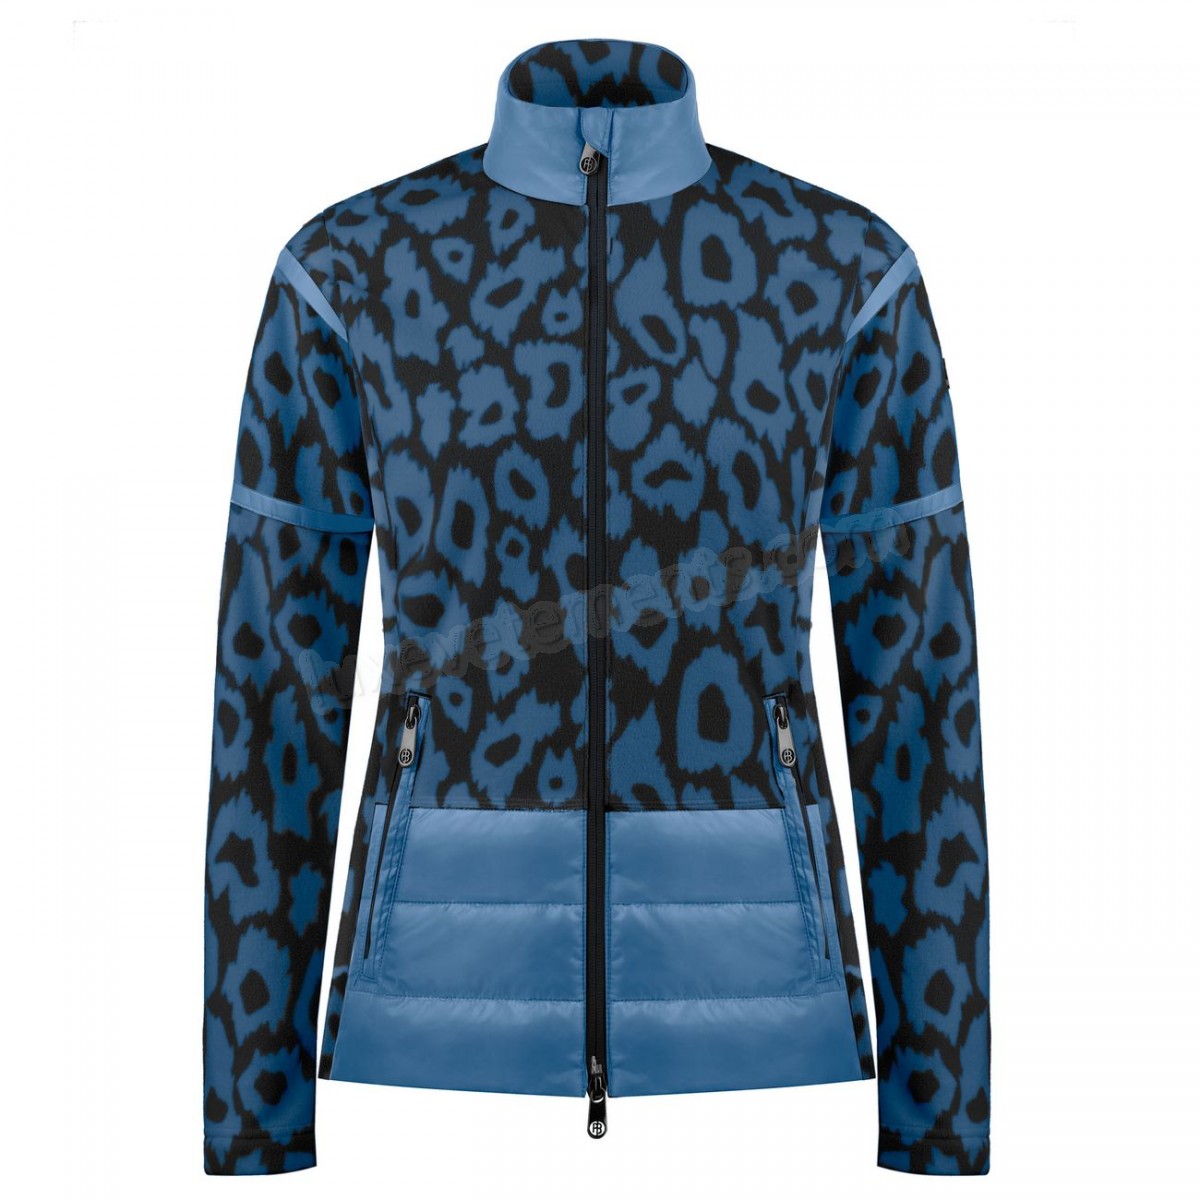 Poivre Blanc-Sports d'hiver femme POIVRE BLANC Veste Polaire Poivre Blanc Hybrid Fleece Jacket 1601 Panther Blue Femme Vente en ligne - -3